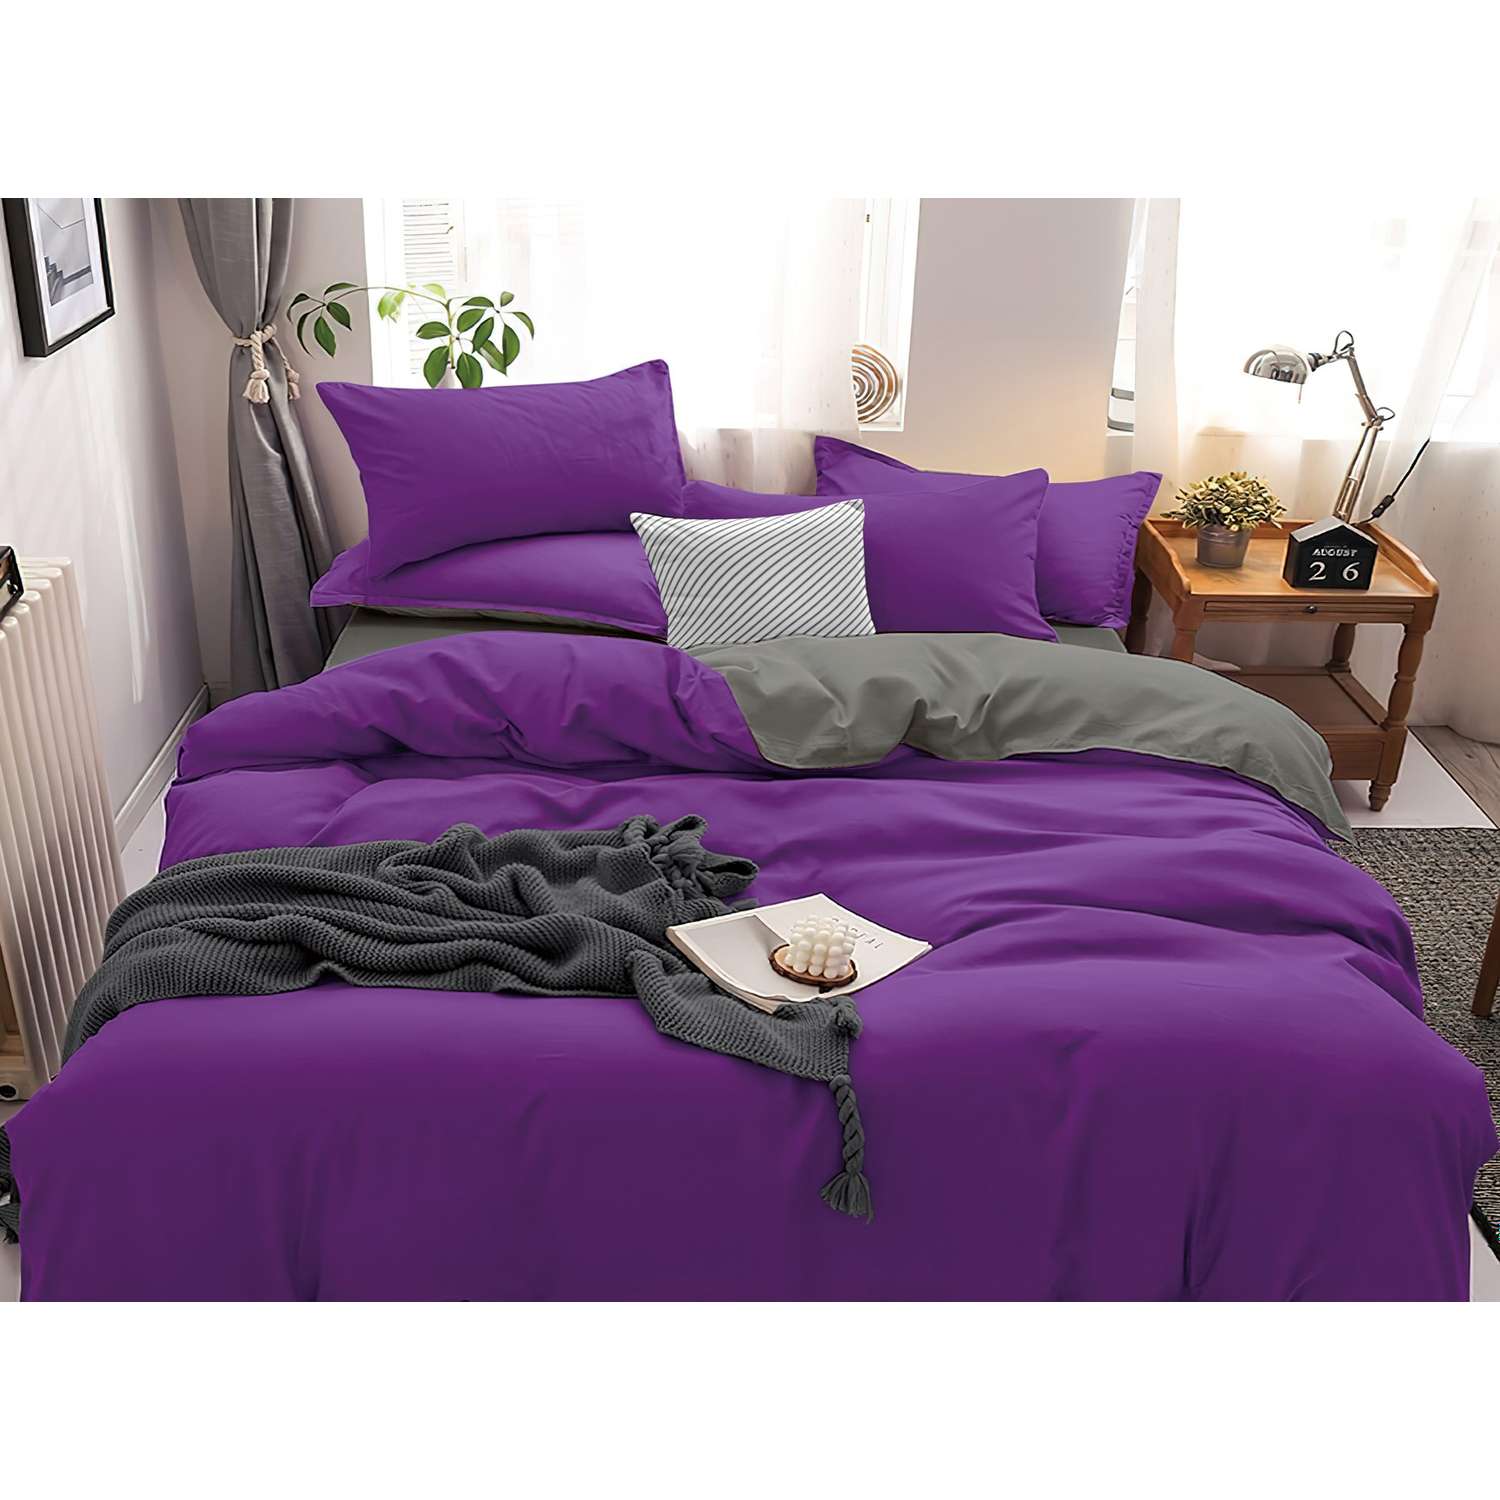 Комплект постельного белья PAVLine Манетти полисатин 2-спальный фиолетовый/серый S26 - фото 3